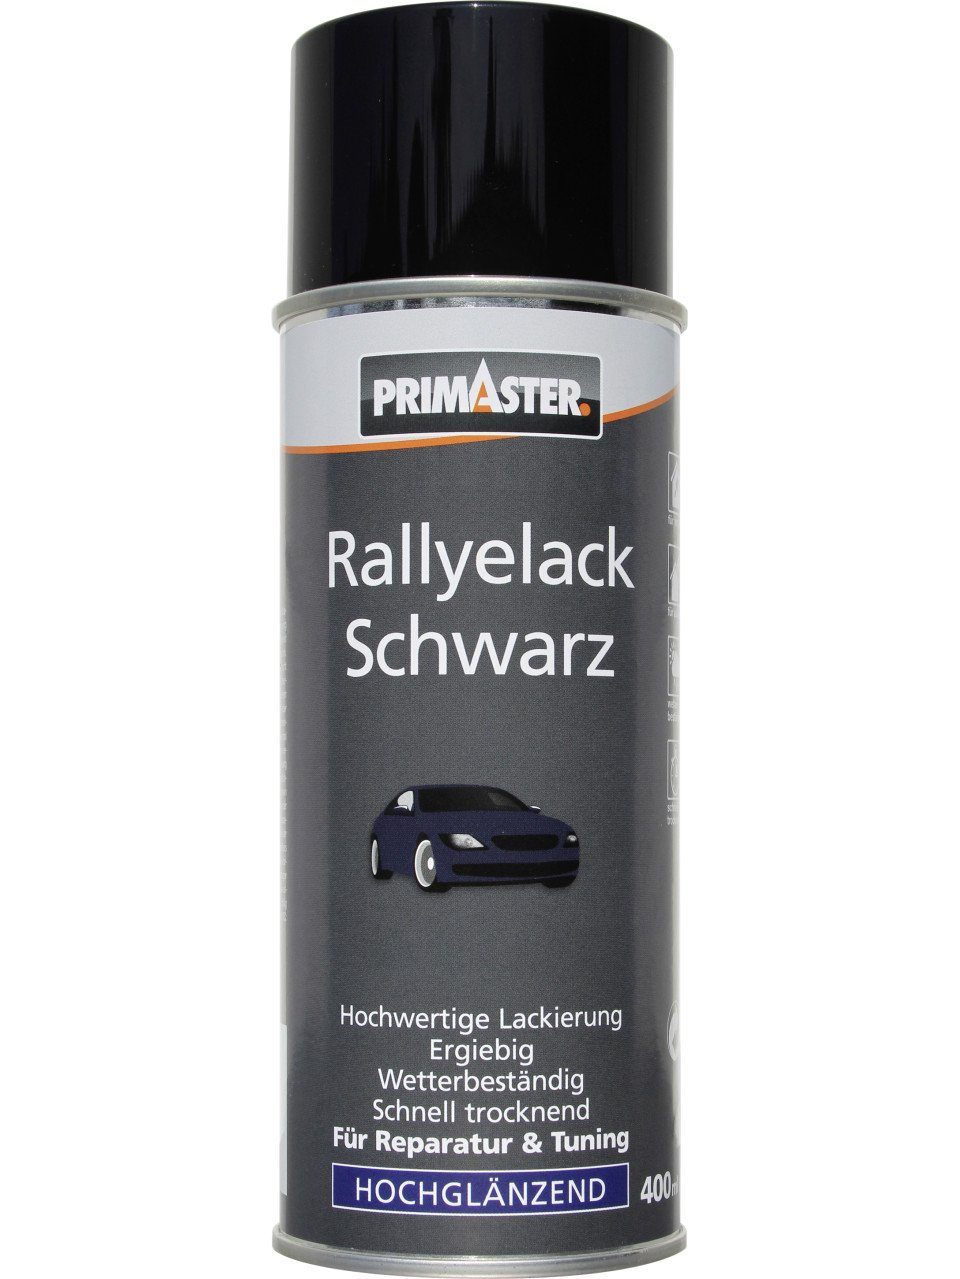 Primaster Sprühlack Primaster Rallye-Lackspray schwarz glänzend 400ml